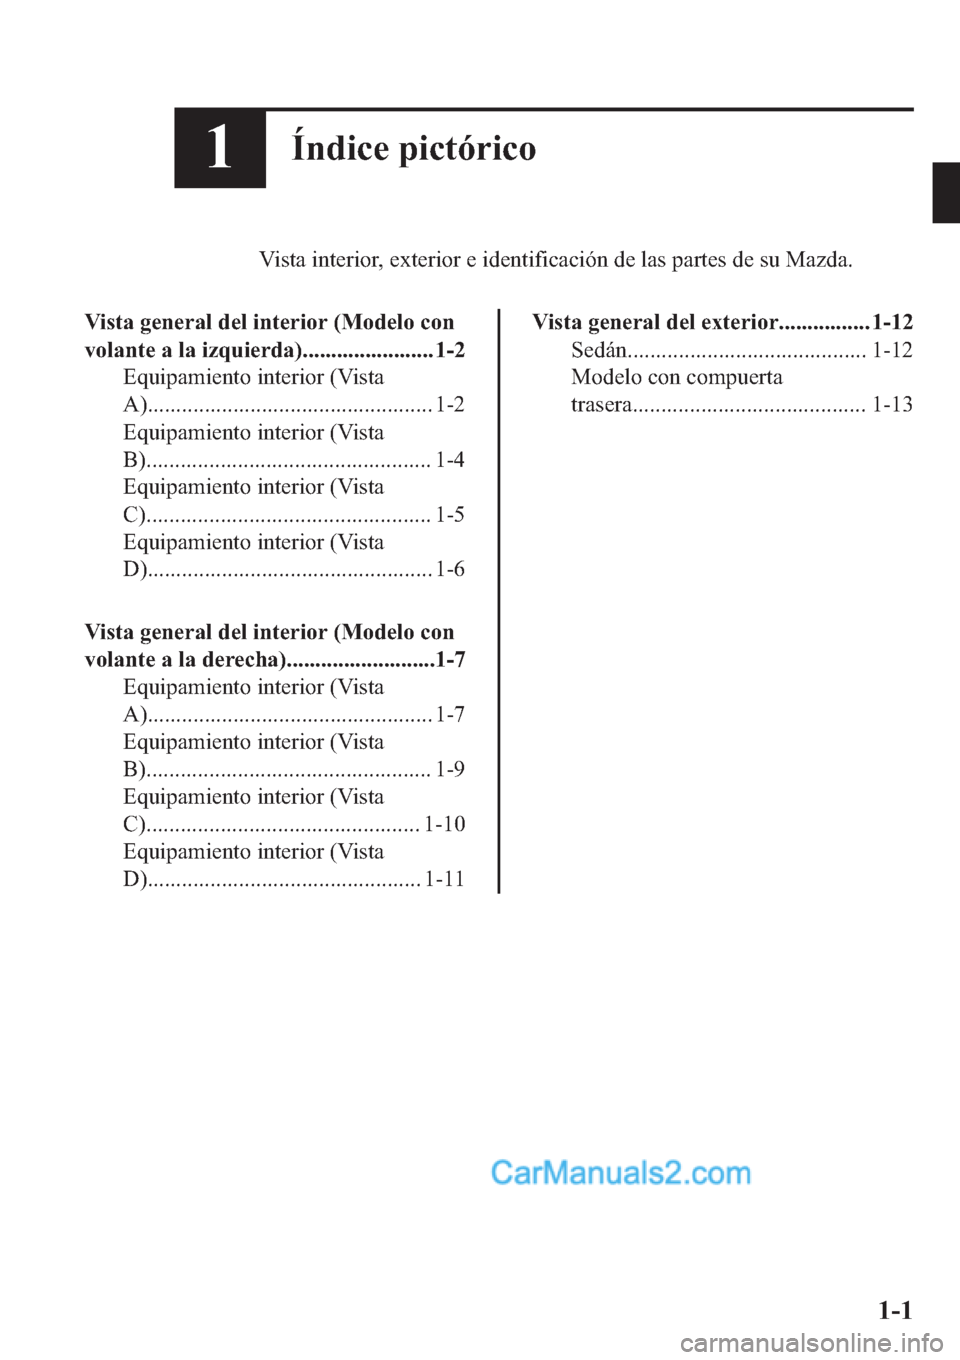 MAZDA MODEL 2 2019  Manual del propietario (in Spanish) ��Ë�Q�G�L�F�H��S�L�F�W�y�U�L�F�R
�9�L�V�W�D��L�Q�W�H�U�L�R�U���H�[�W�H�U�L�R�U��H��L�G�H�Q�W�L�I�L�F�D�F�L�y�Q��G�H��O�D�V��S�D�U�W�H�V��G�H��V�X��0�D�]�G�D�
�9�L�V�W�D��J�H�Q�H�U�D�O�